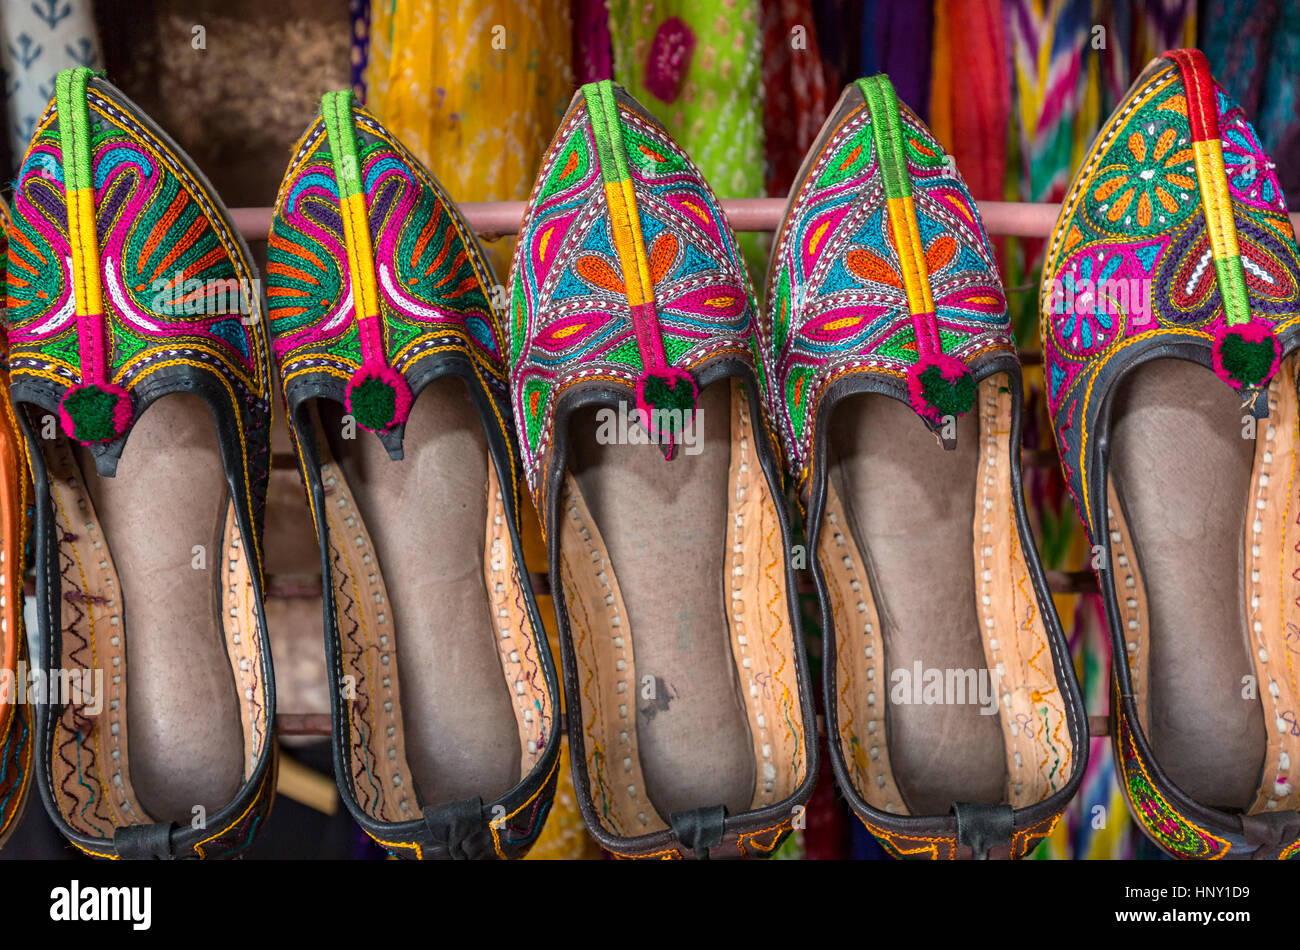 Colorful ethnic shoes, Jodhpur, Rajasthan, India Stock Photo